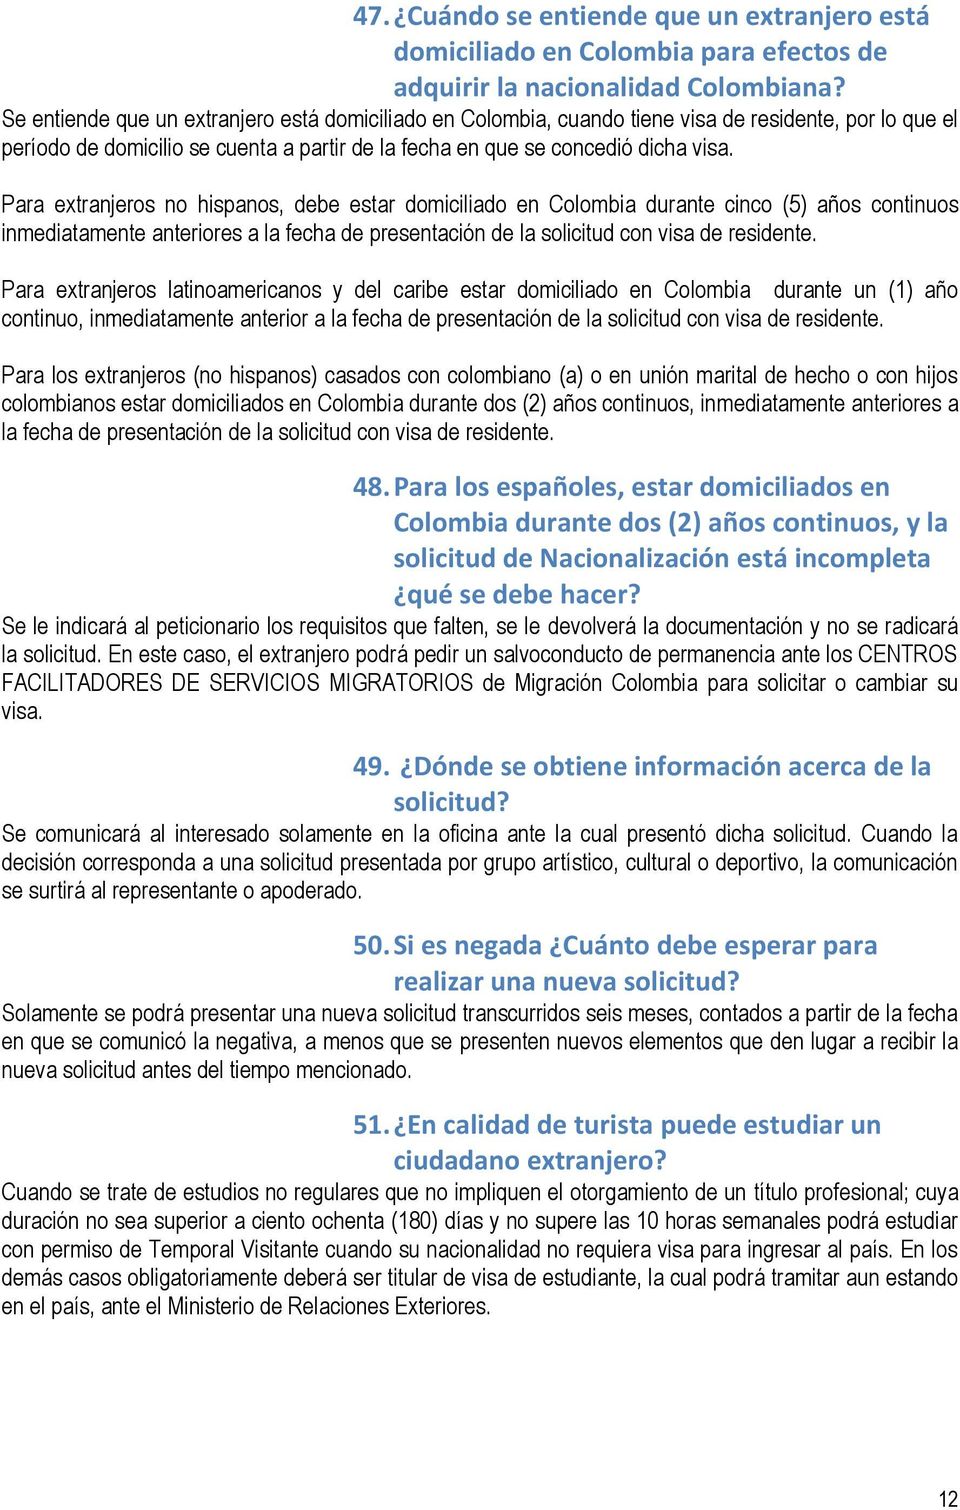 Para extranjeros no hispanos, debe estar domiciliado en Colombia durante cinco (5) años continuos inmediatamente anteriores a la fecha de presentación de la solicitud con visa de residente.